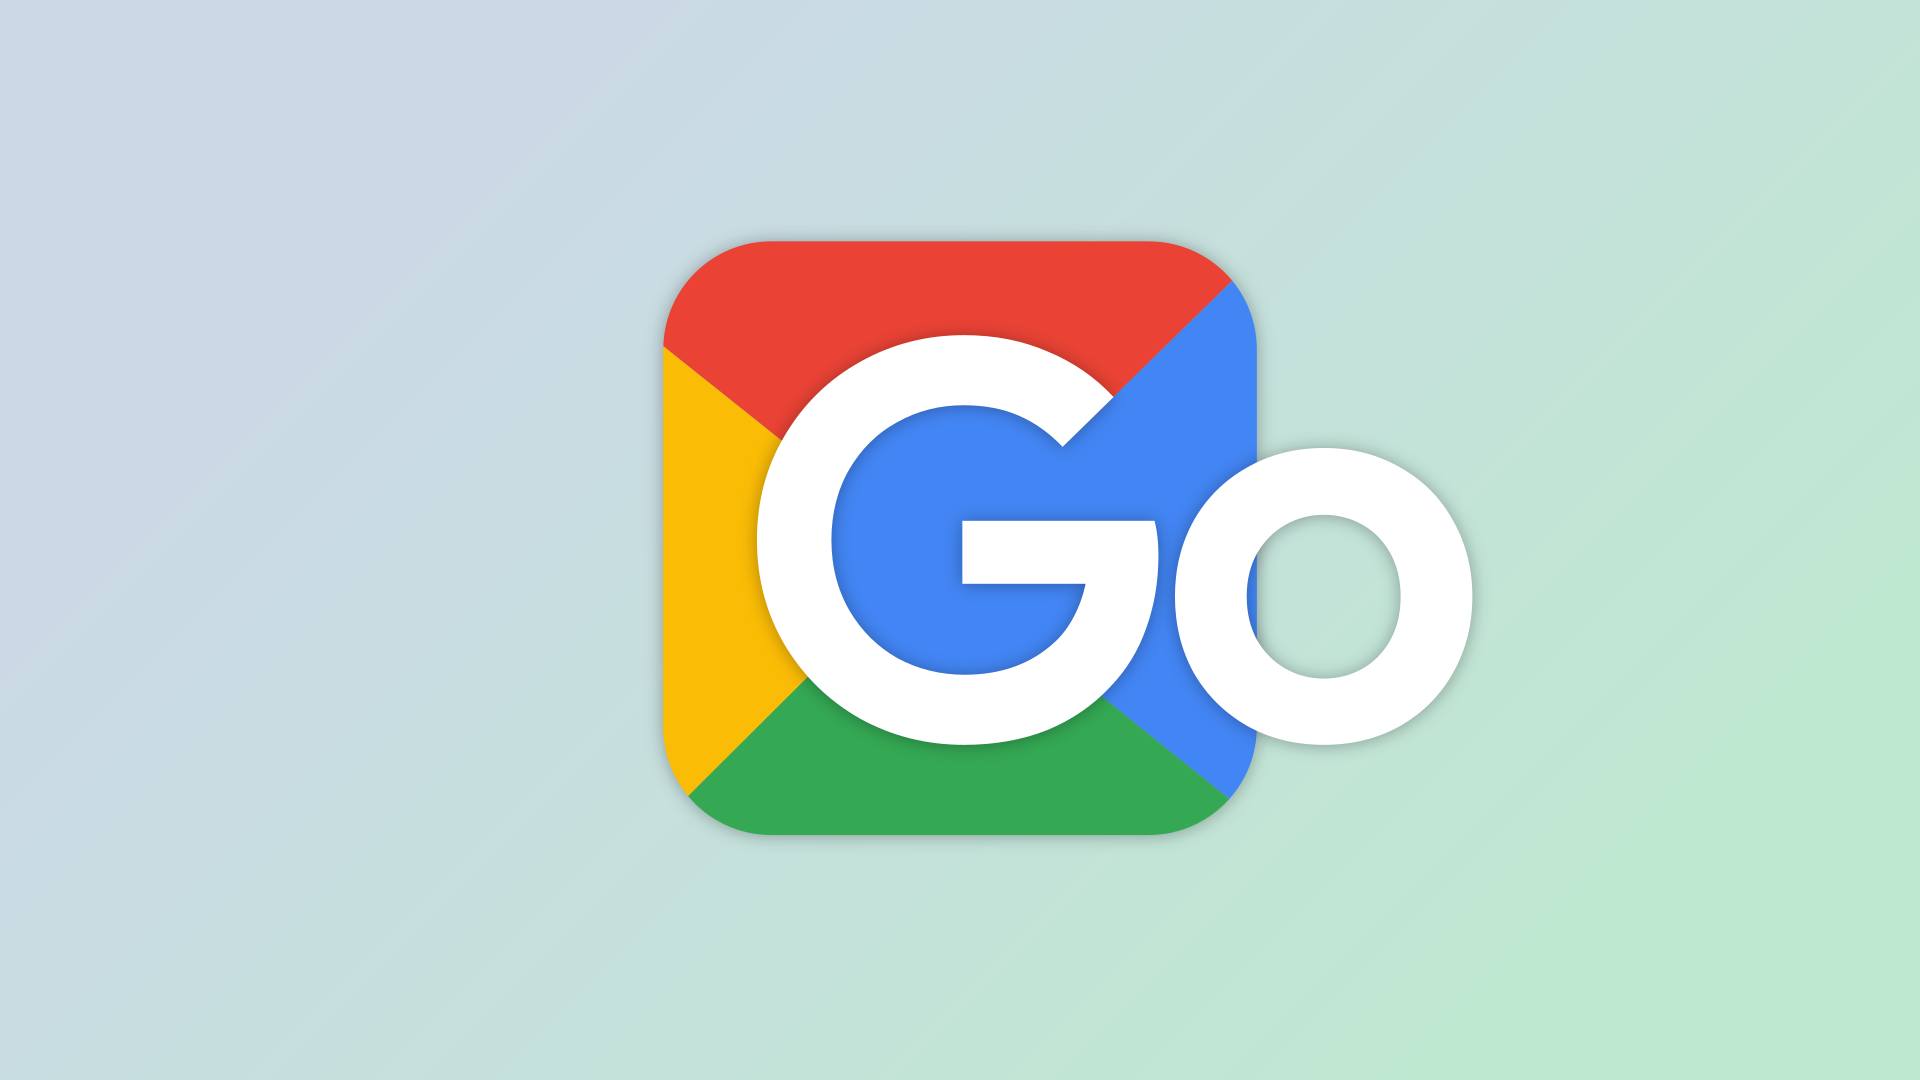 Logotipo do Google Go.